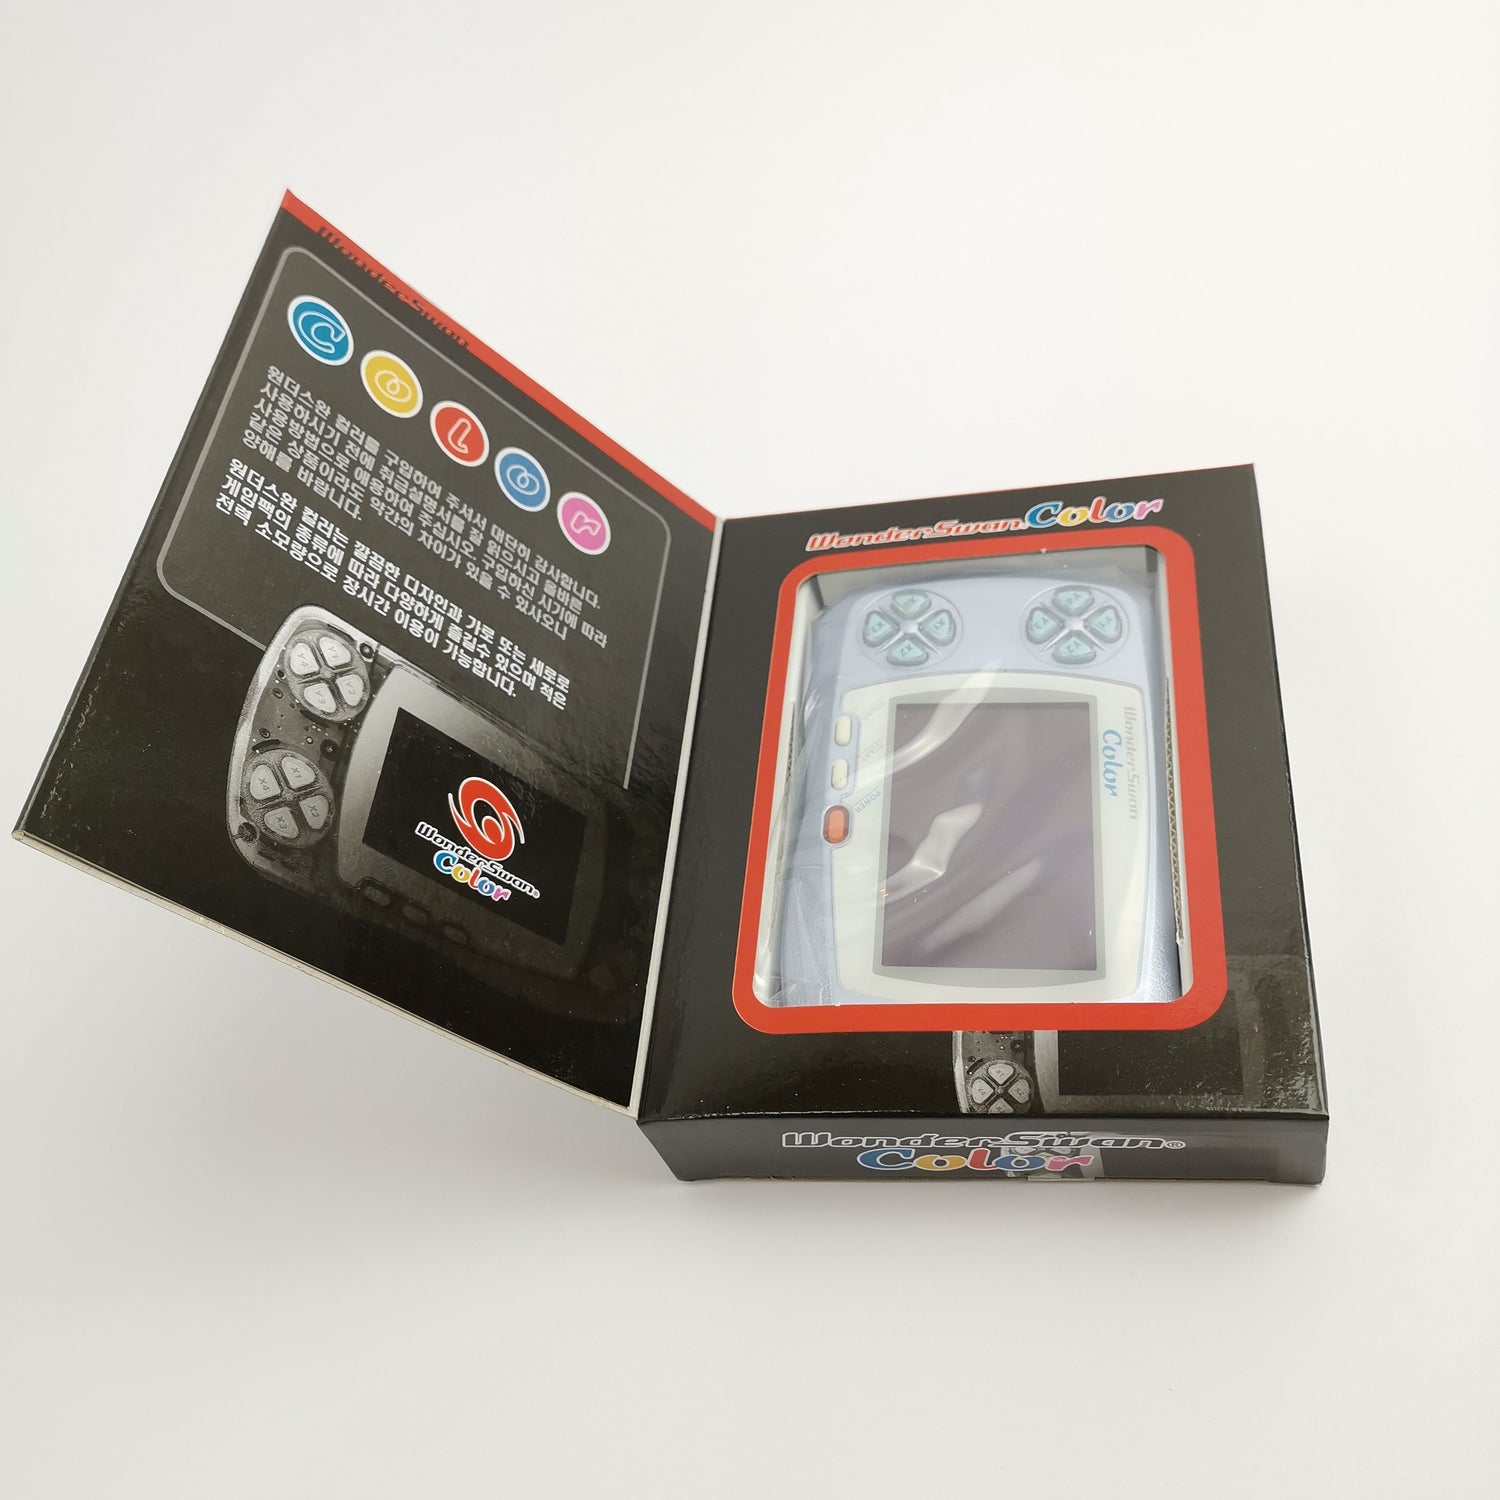 Wonderswan Color Pearl Blue | Wonder Swan Console Handheld OVP NEW NEW